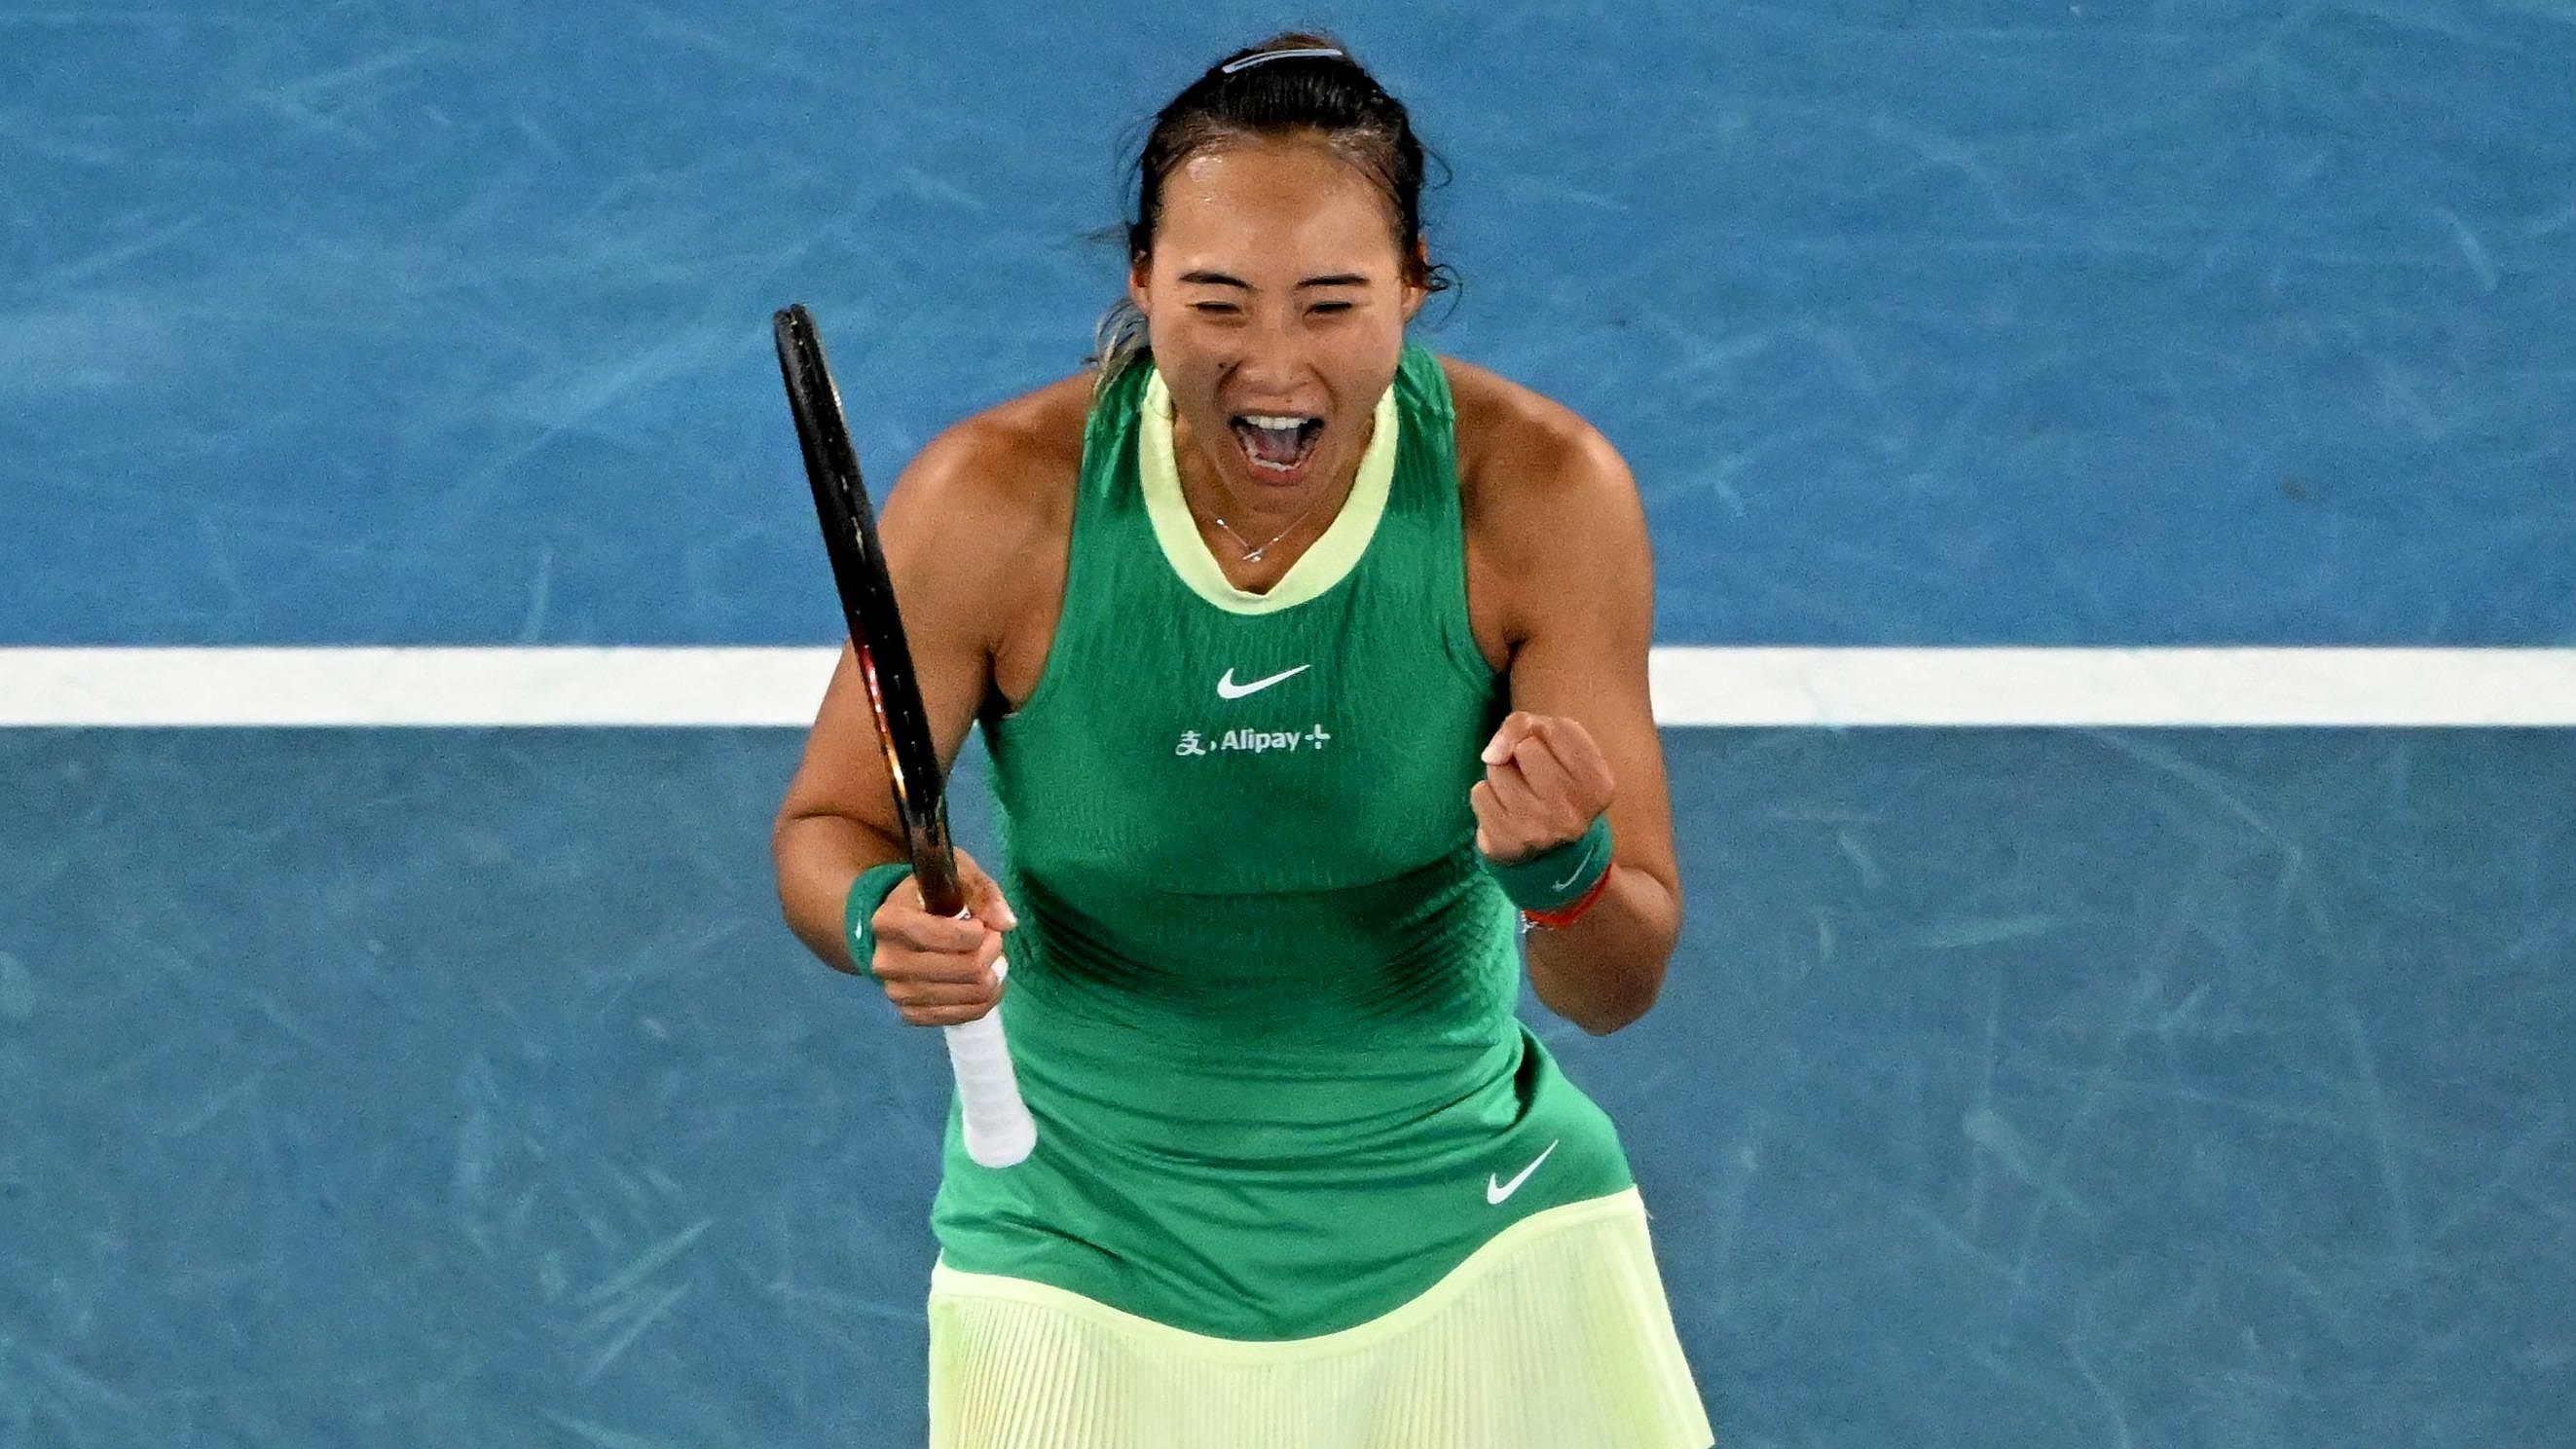 Australian Open: Zheng triumphs over Yastremska and will face Sabalenka for her first Grand Slam final